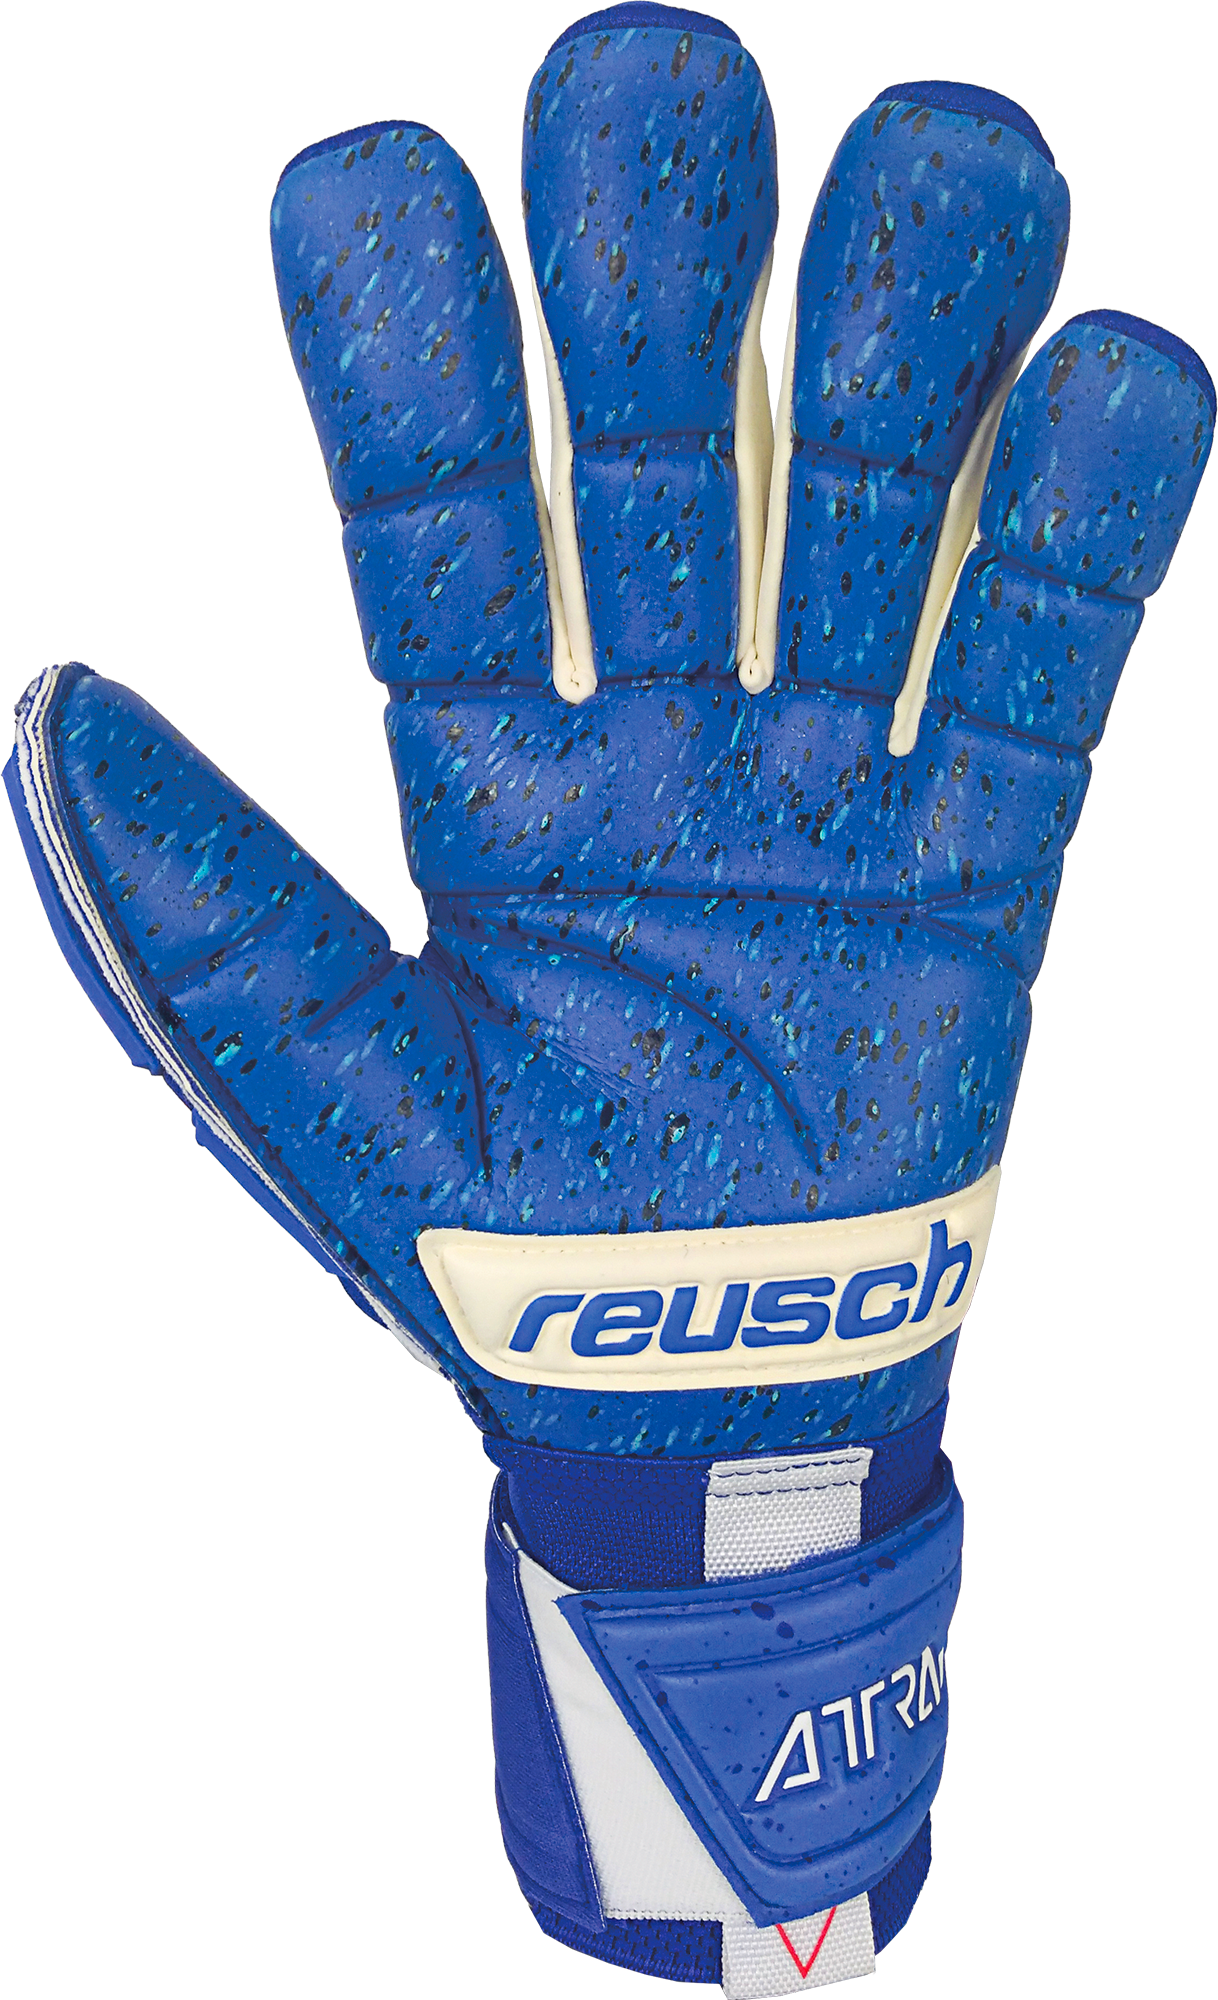 Reusch Attrakt Freegel Fusion Goaliator Goalkeeper – Blue Soccer Gloves 5170995 Zone